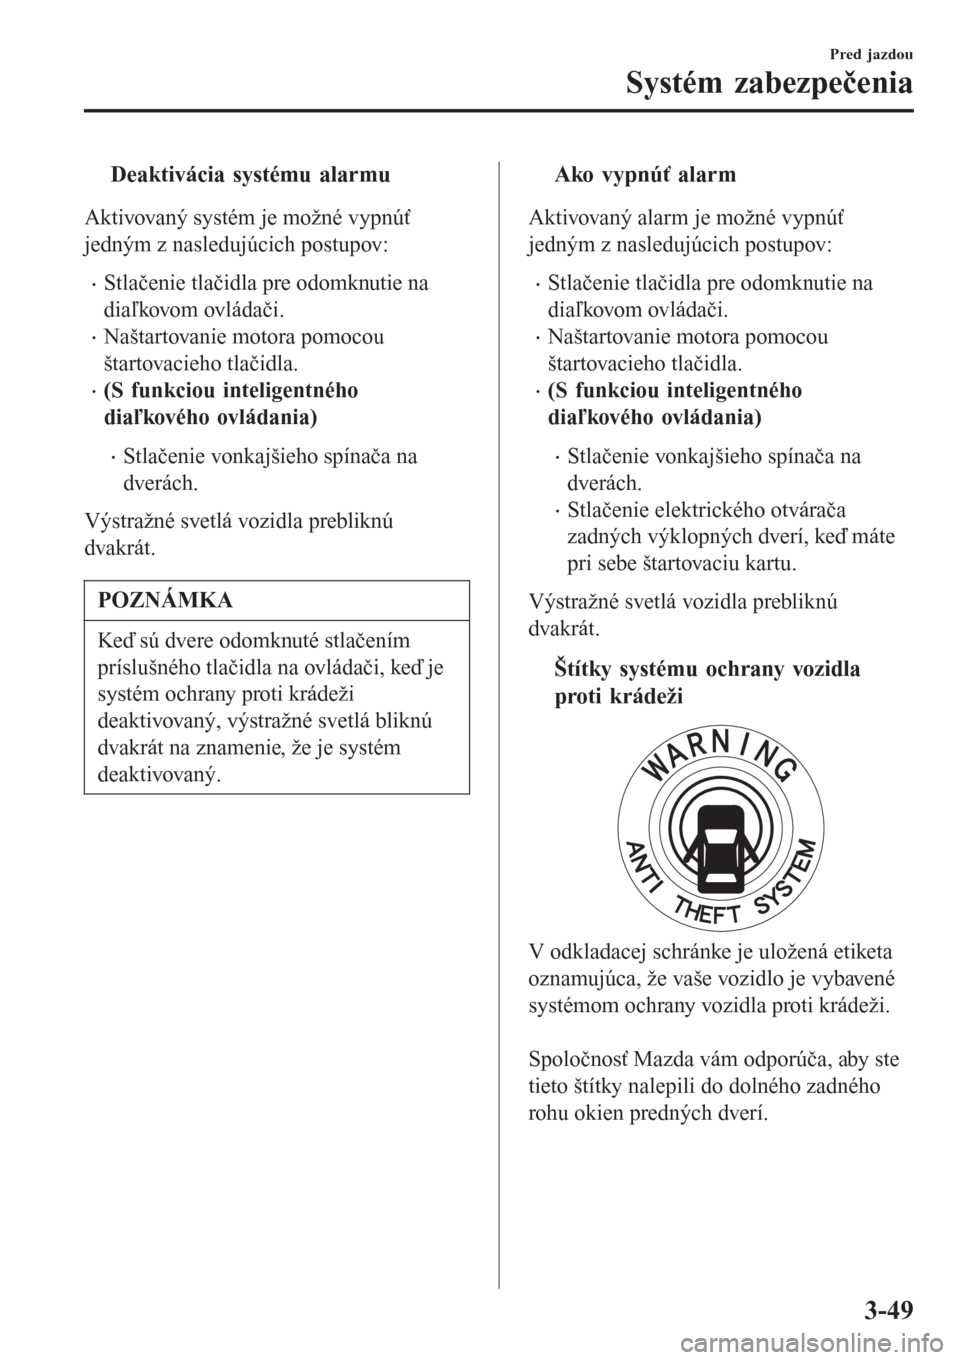 MAZDA MODEL CX-3 2015  Užívateľská príručka (in Slovak) tDeaktivácia systému alarmu
Aktivovaný systém je možné vypnúť
jedným z nasledujúcich postupov:
•Stlačenie tlačidla pre odomknutie na
diaľkovom ovládači.
•Naštartovanie motora pomoc